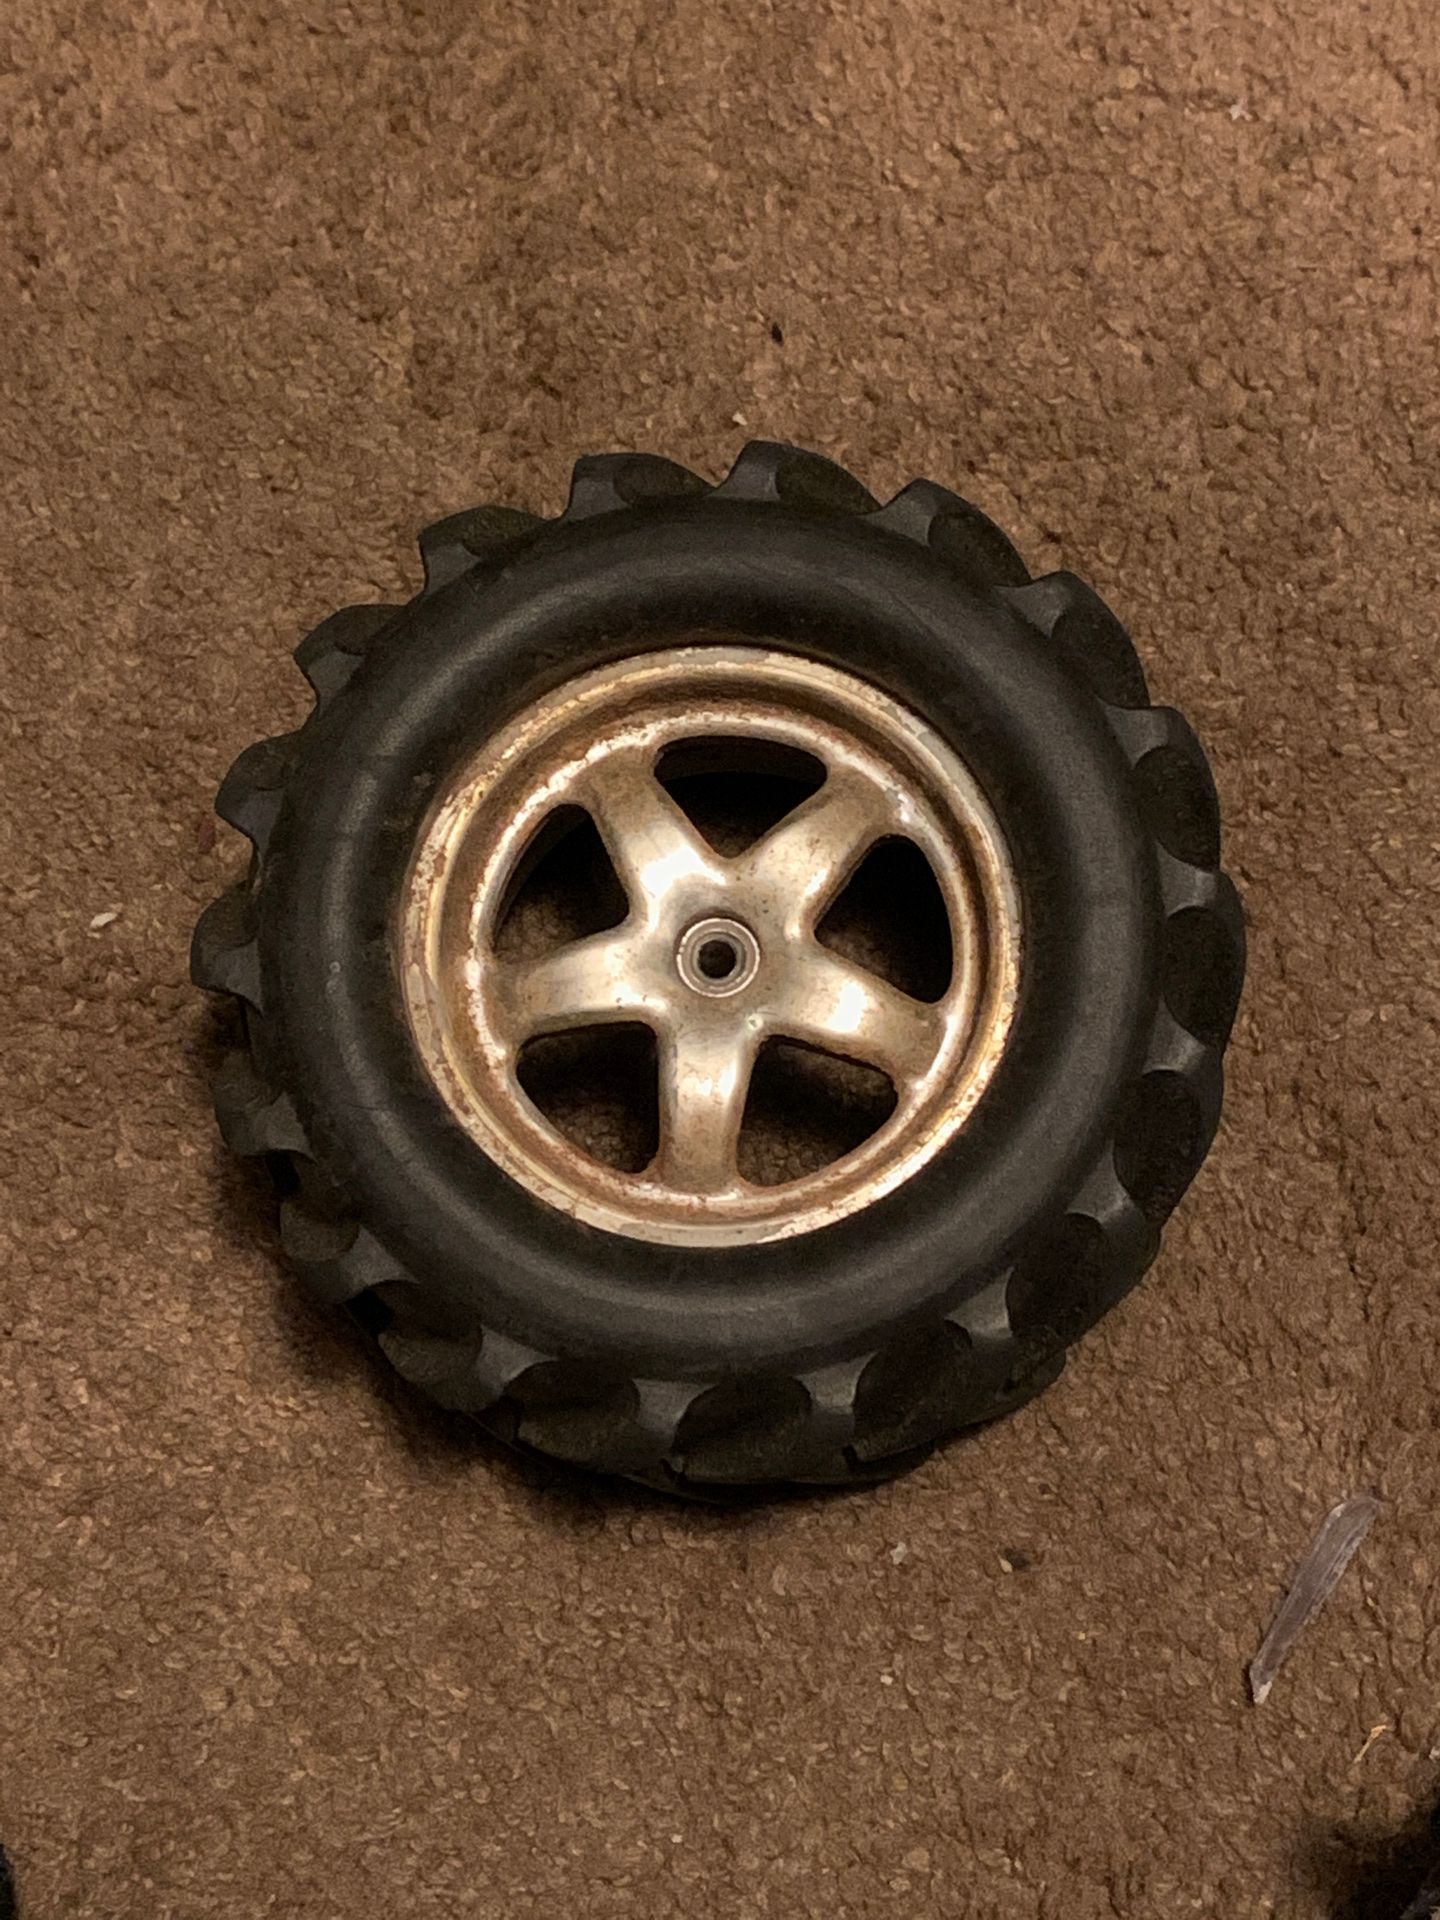 Bad ass wheel